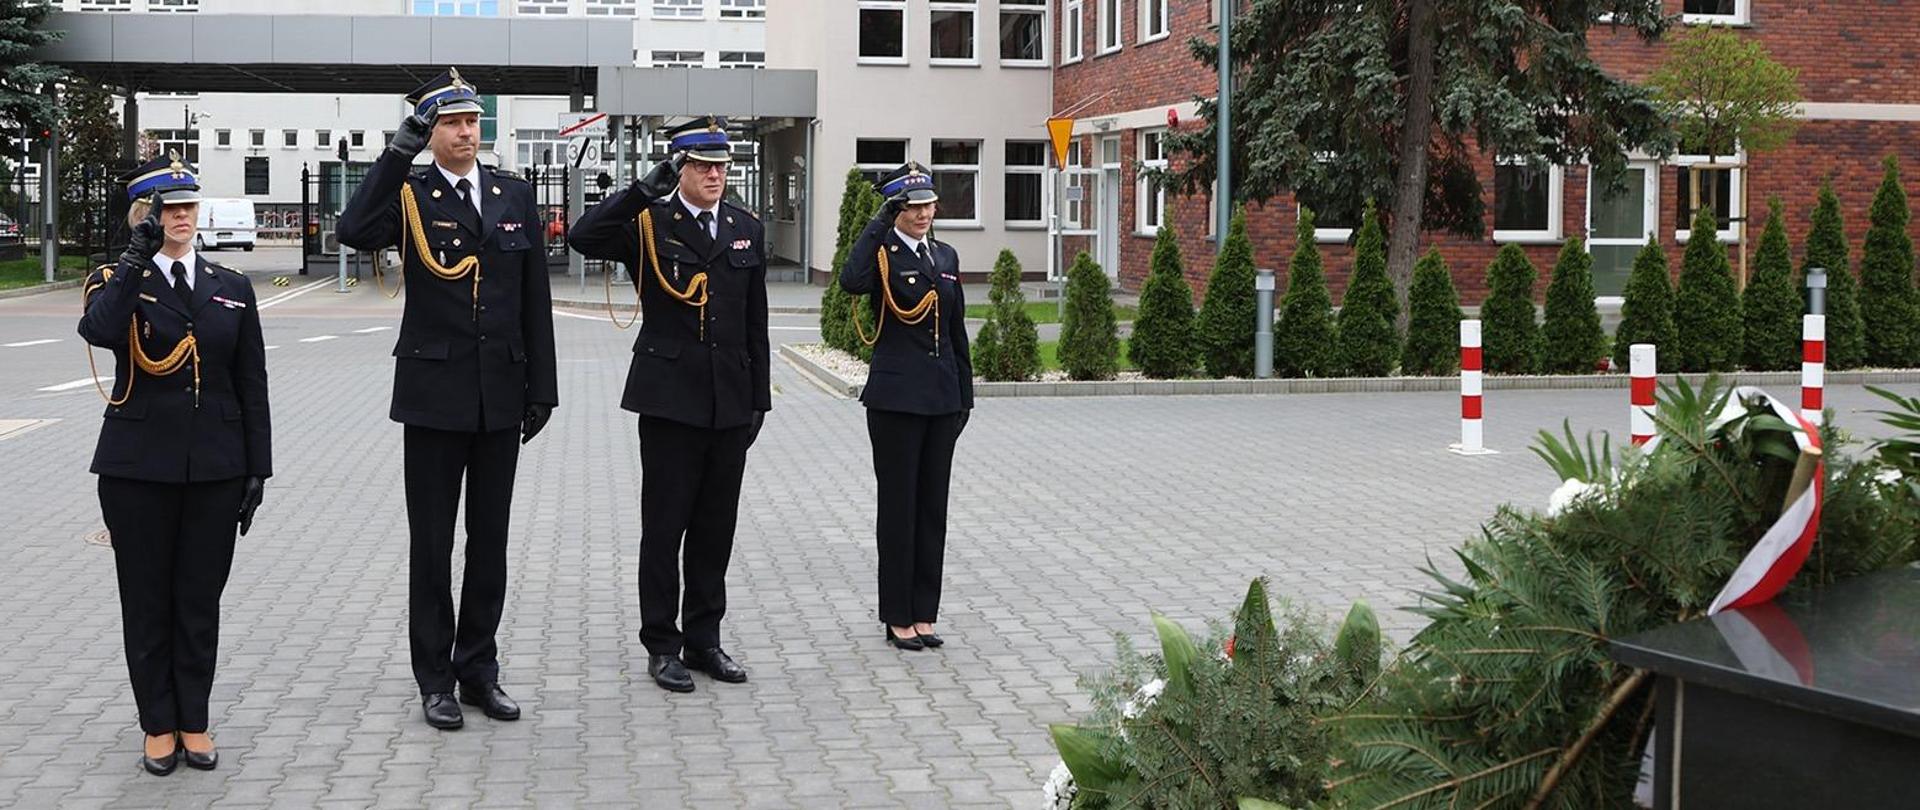 Dwie kobiety i dwóch mężczyzn w strażackich mundurach galowych w momencie salutowania. W tle budynki i brama wjazdowa.